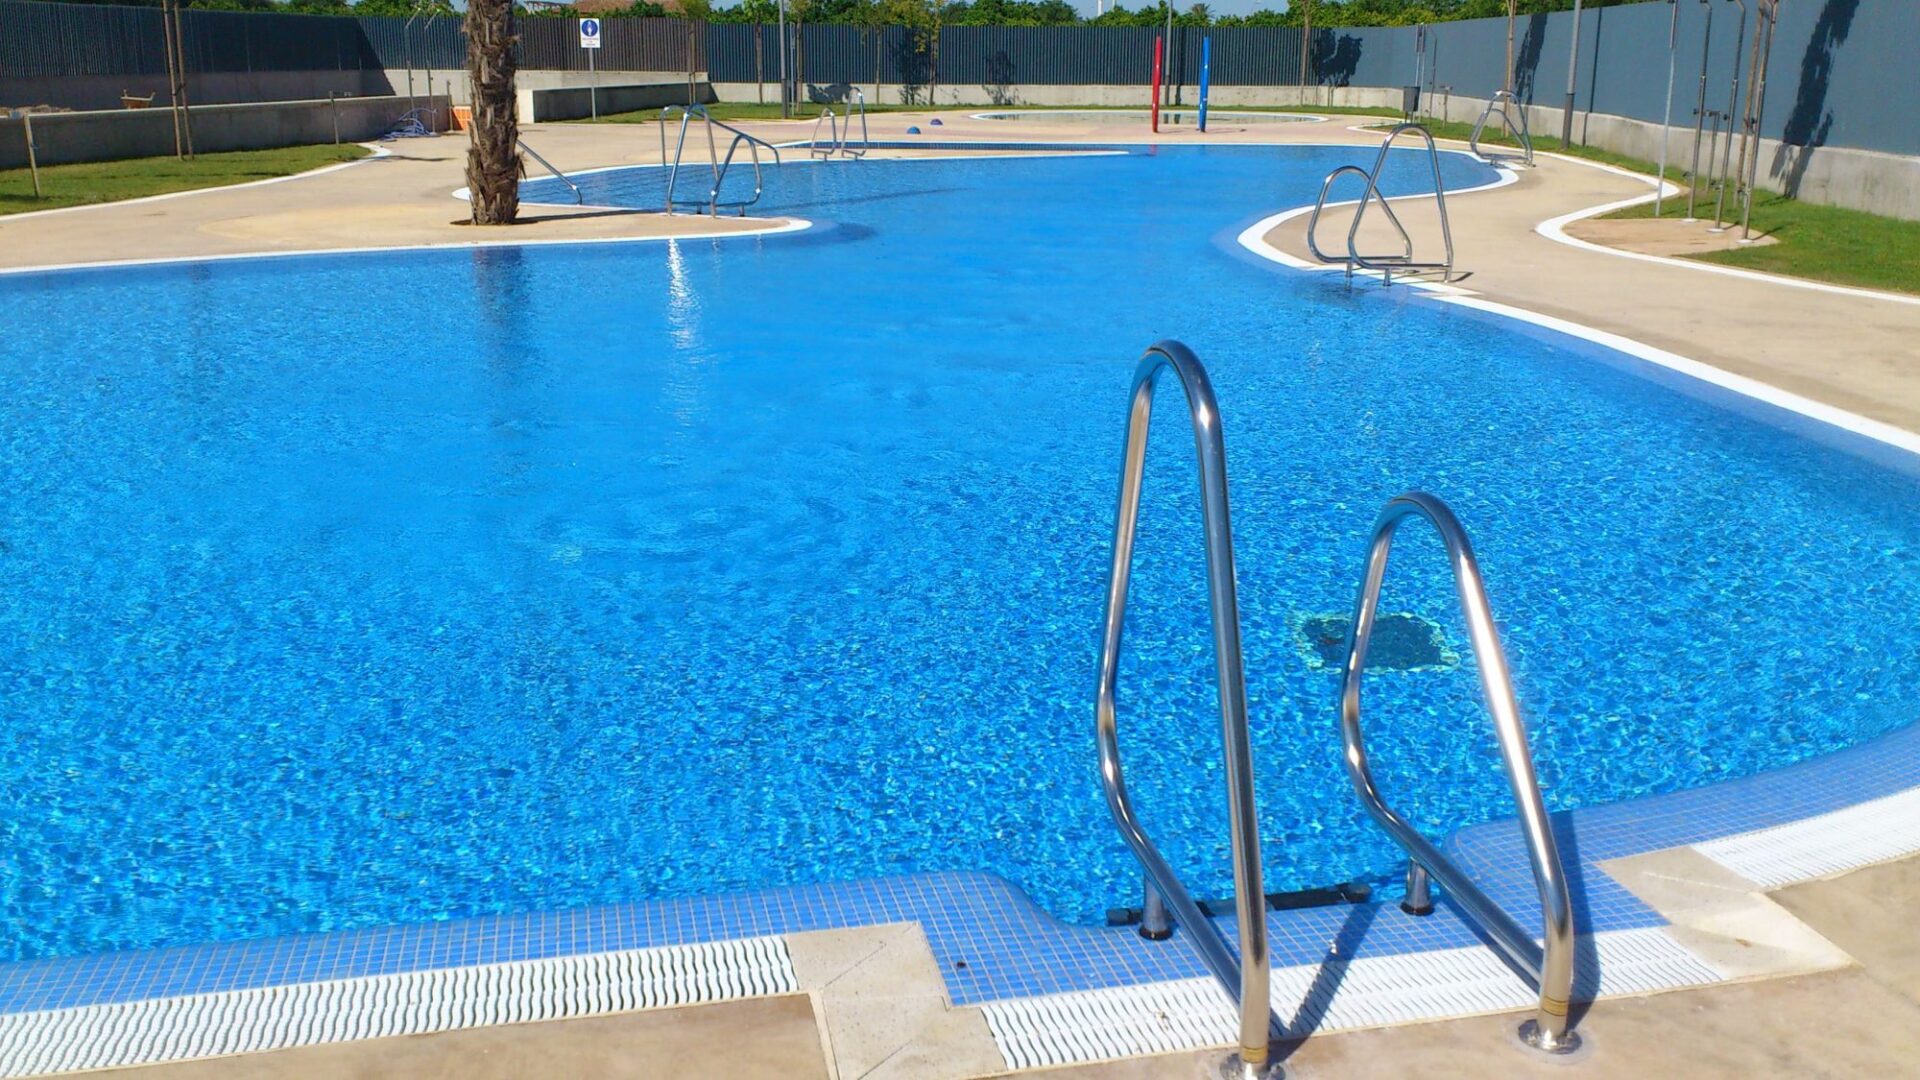 La piscinia municipal de verano se abre al público el sábado 23 junio 2018 1